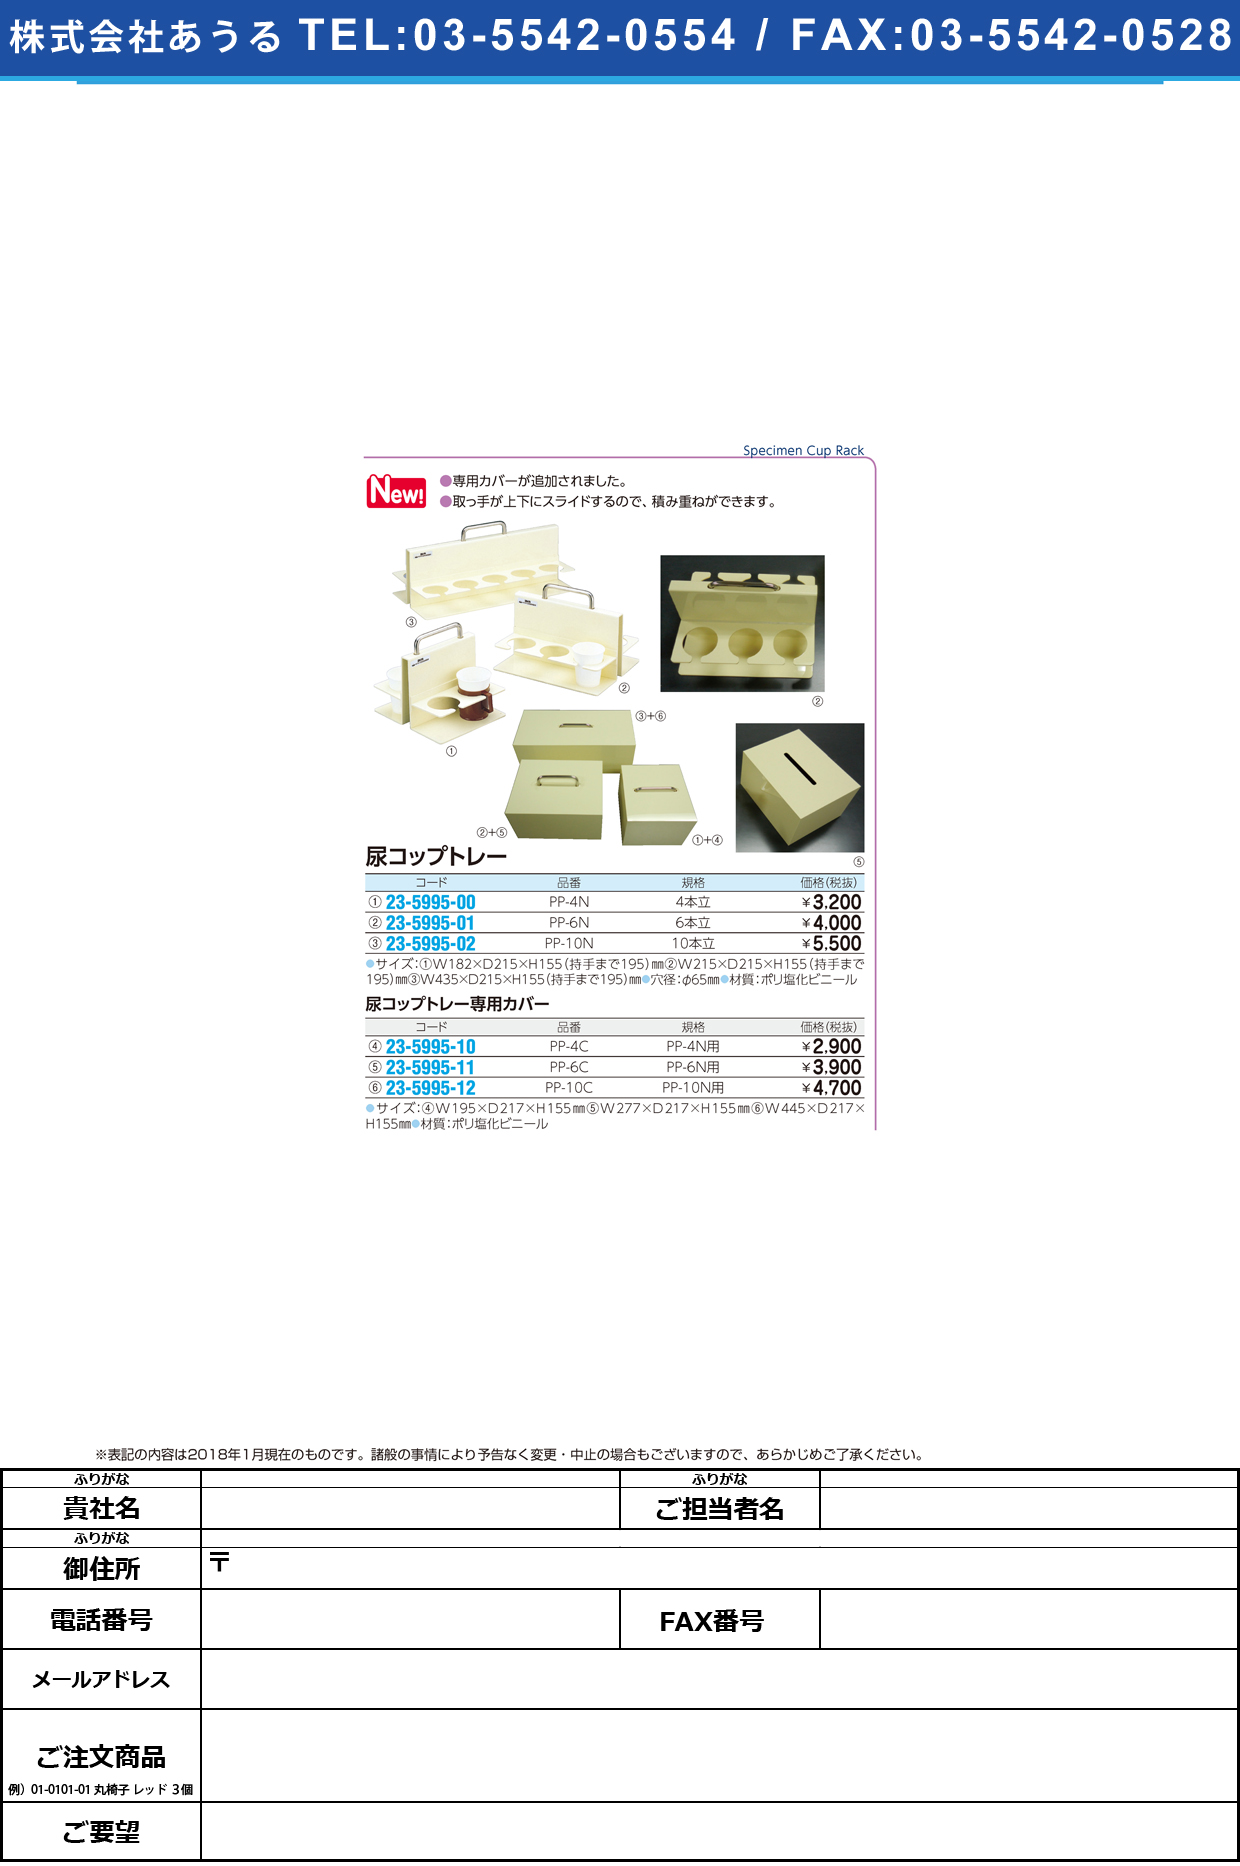 (23-5995-00)尿コップトレー（４人用） PP-4N ﾆｮｳｺｯﾌﾟﾄﾚｰ(4ﾆﾝﾖｳ)【1個単位】【2019年カタログ商品】